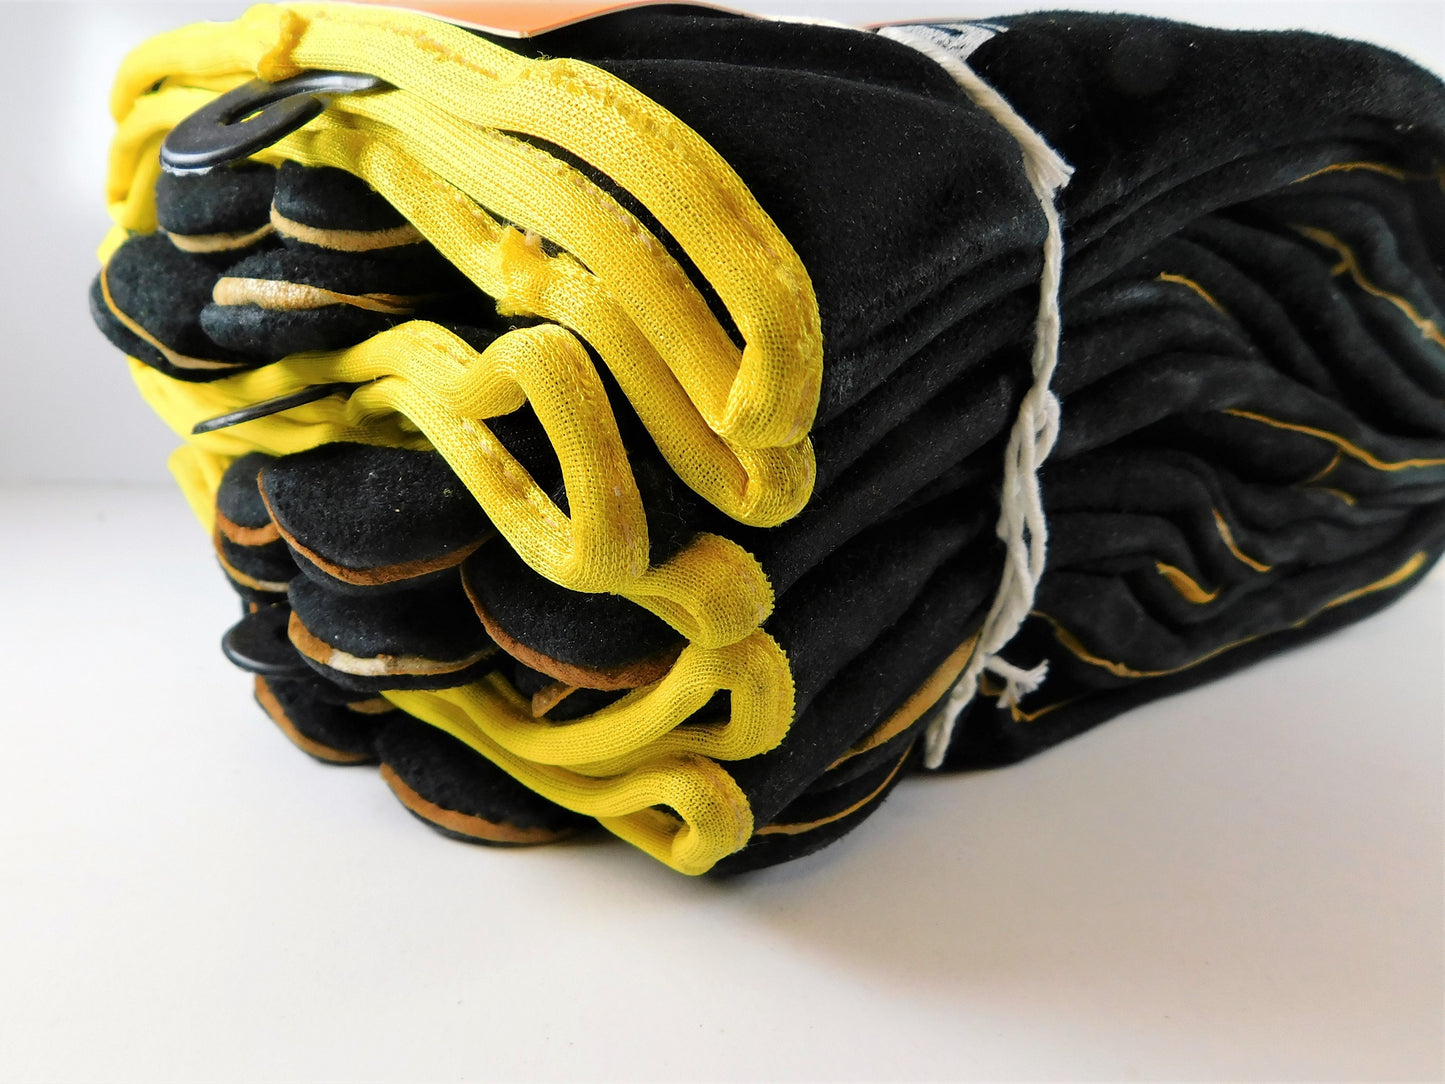 Welding Gloves Bossweld 16" Black & Gold Large 6Pair 700010